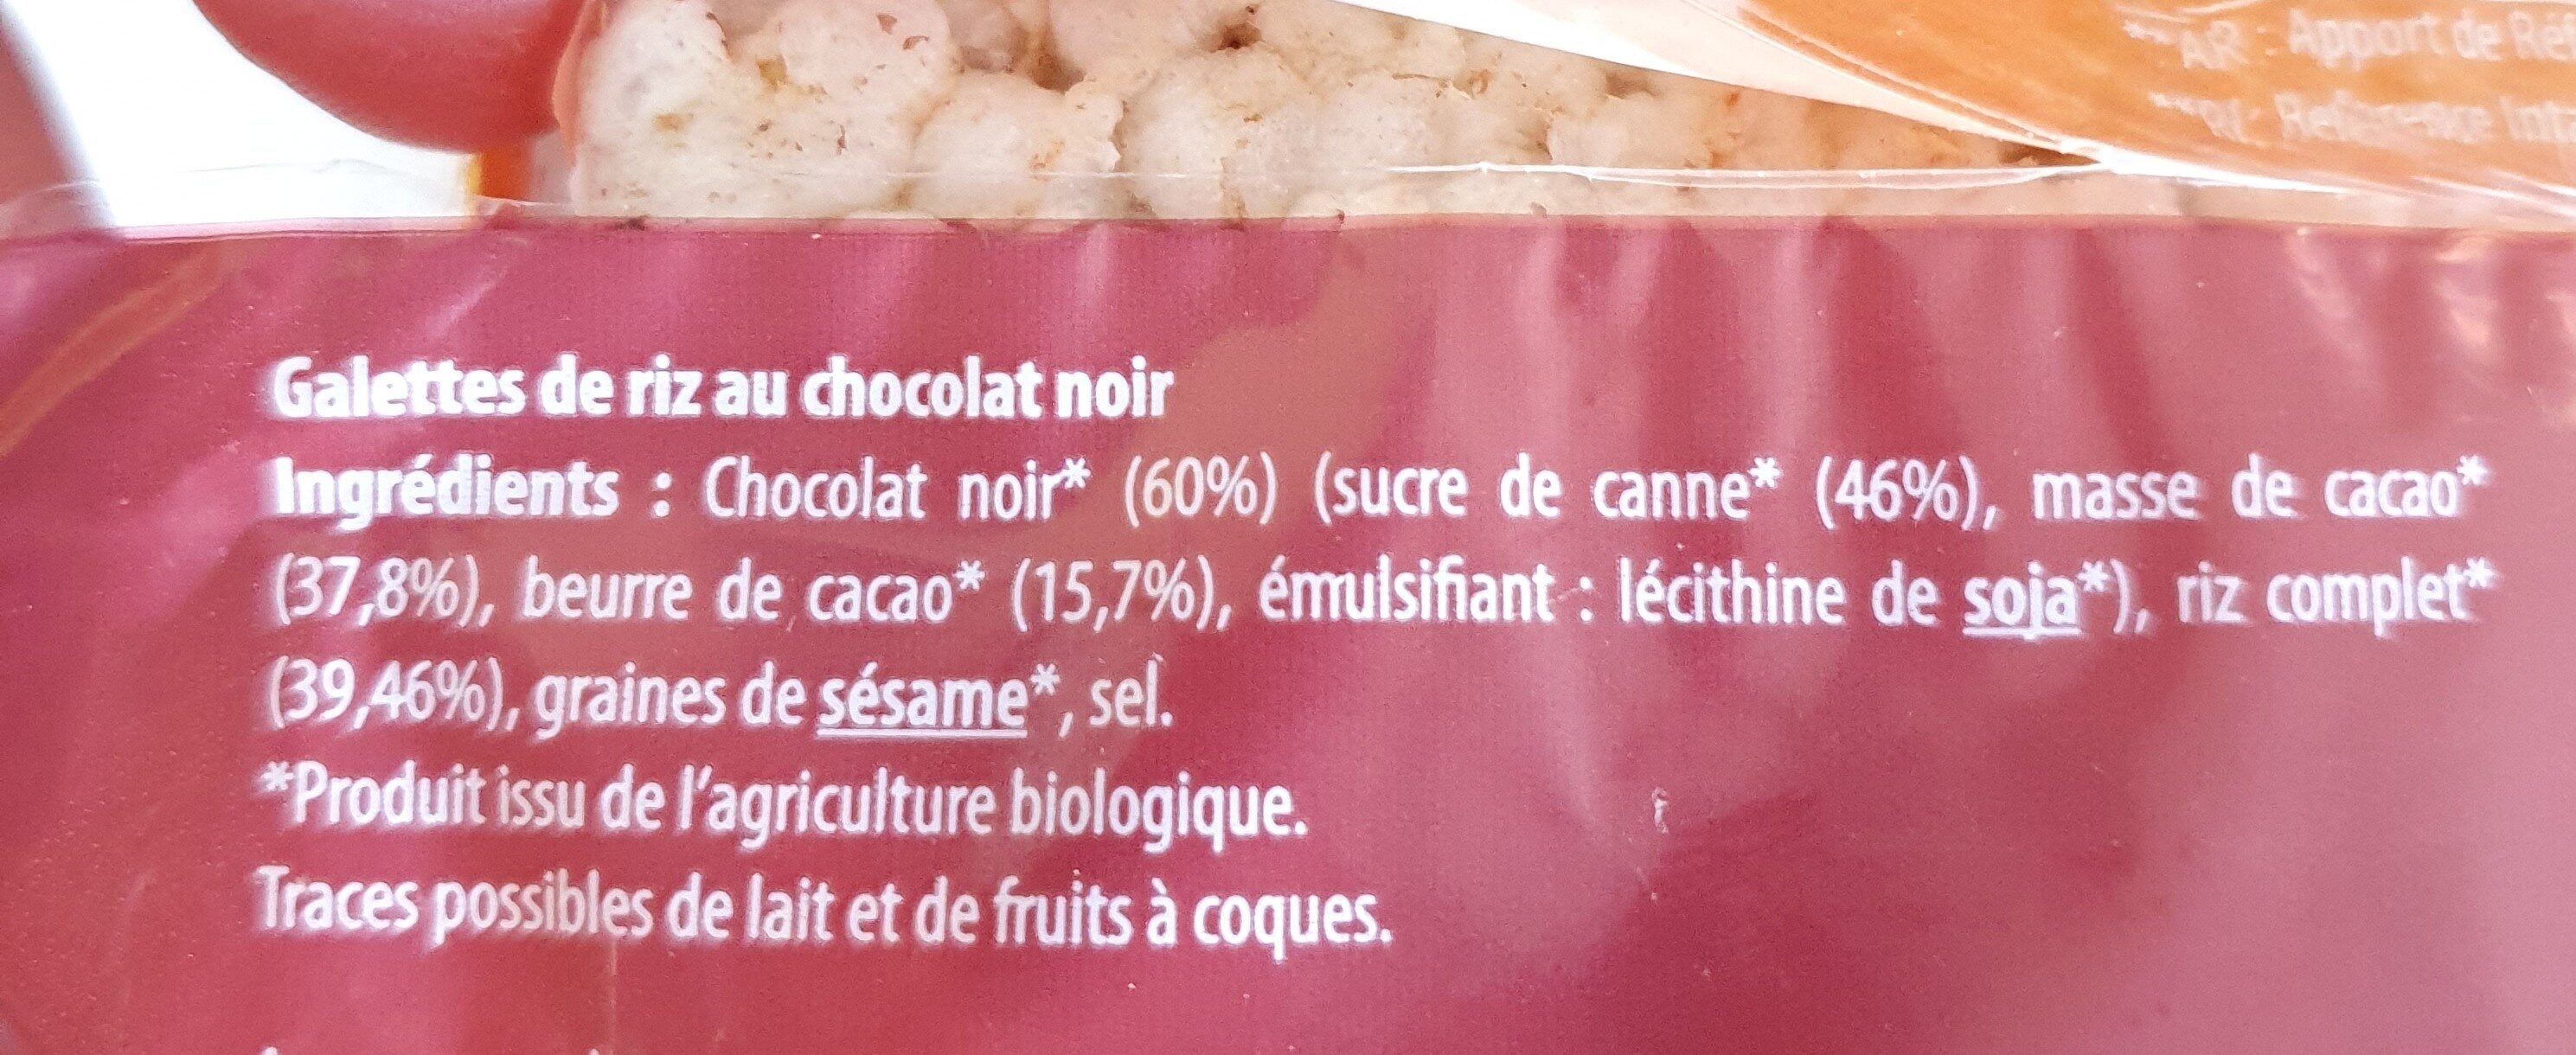 GALETTES RIZ CHOCOLAT NOIR SANS GLUTEN - Ingredients - fr